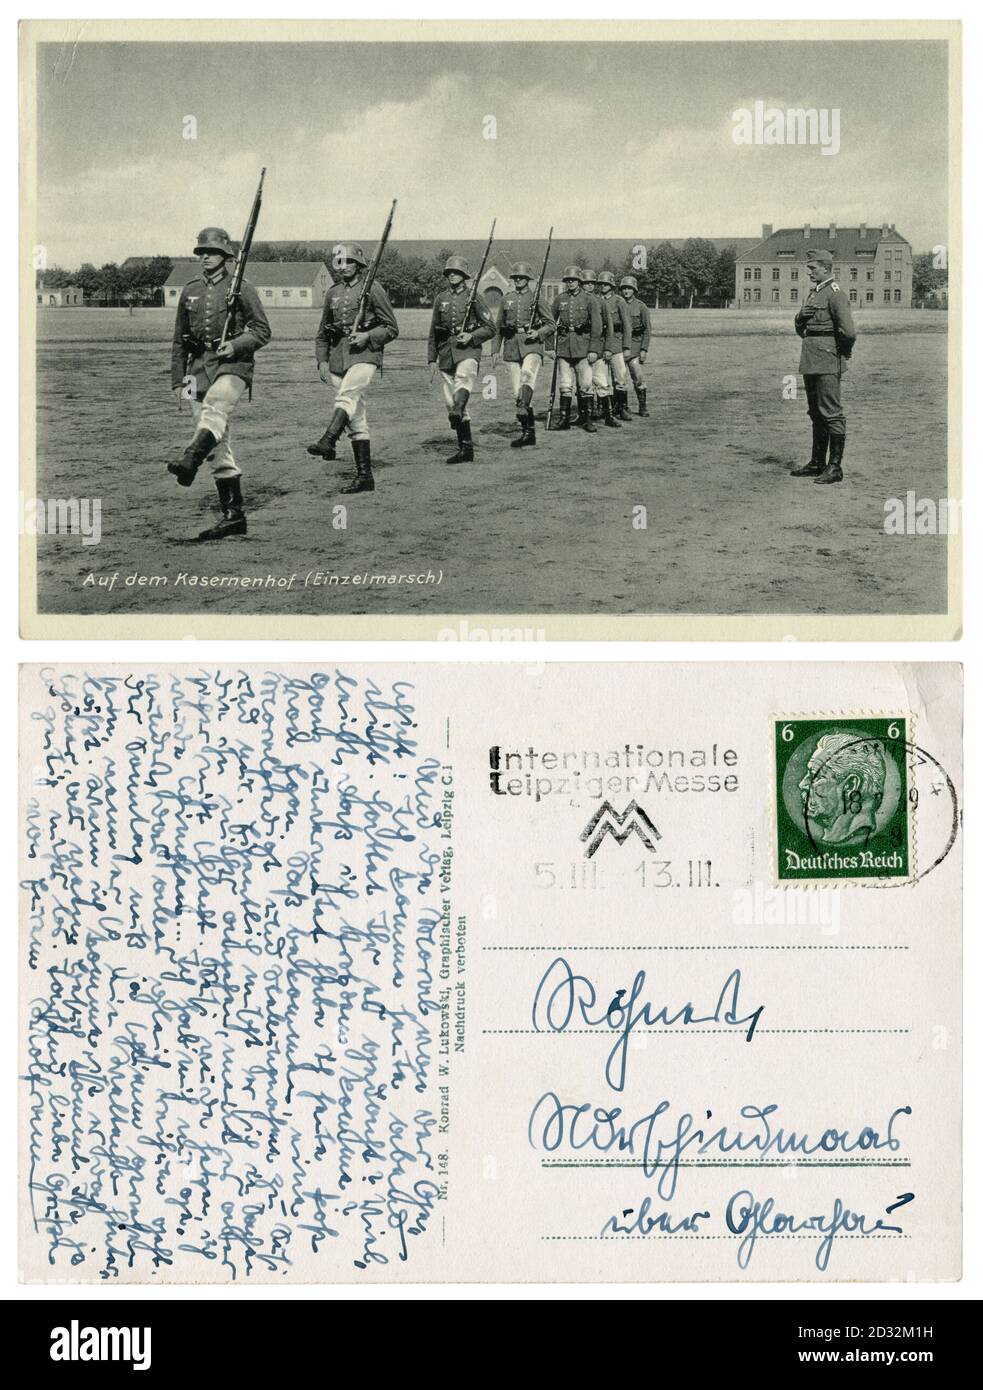 Cartolina fotografica storica tedesca: Nel cortile delle caserme (singolo marzo). Addestramento dei soldati in uniforme con le carbine, Germania, terzo reich, 1939 Foto Stock